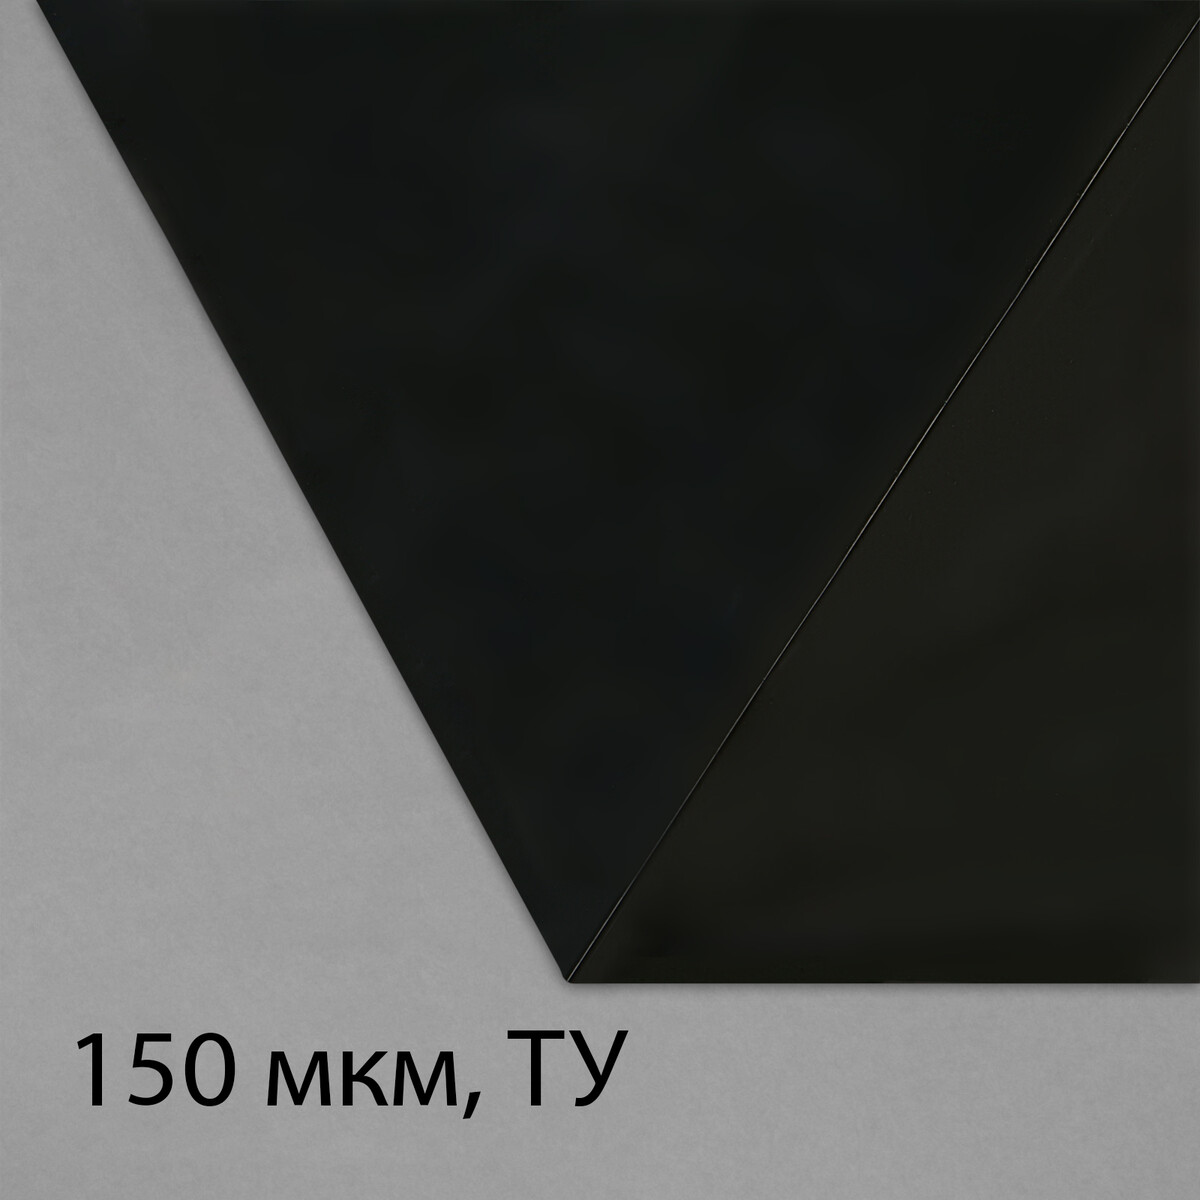 Пленка из полиэтилена, техническая, толщина 150 мкм, черная, 5 × 3 м, рукав (1.5 м × 2), эконом 50%, для дома и сада пленка полиэтиленовая техническая толщина 60 мкм 5 × 3 м рукав 1 5 м × 2 черная 2 сорт эконом 50 %